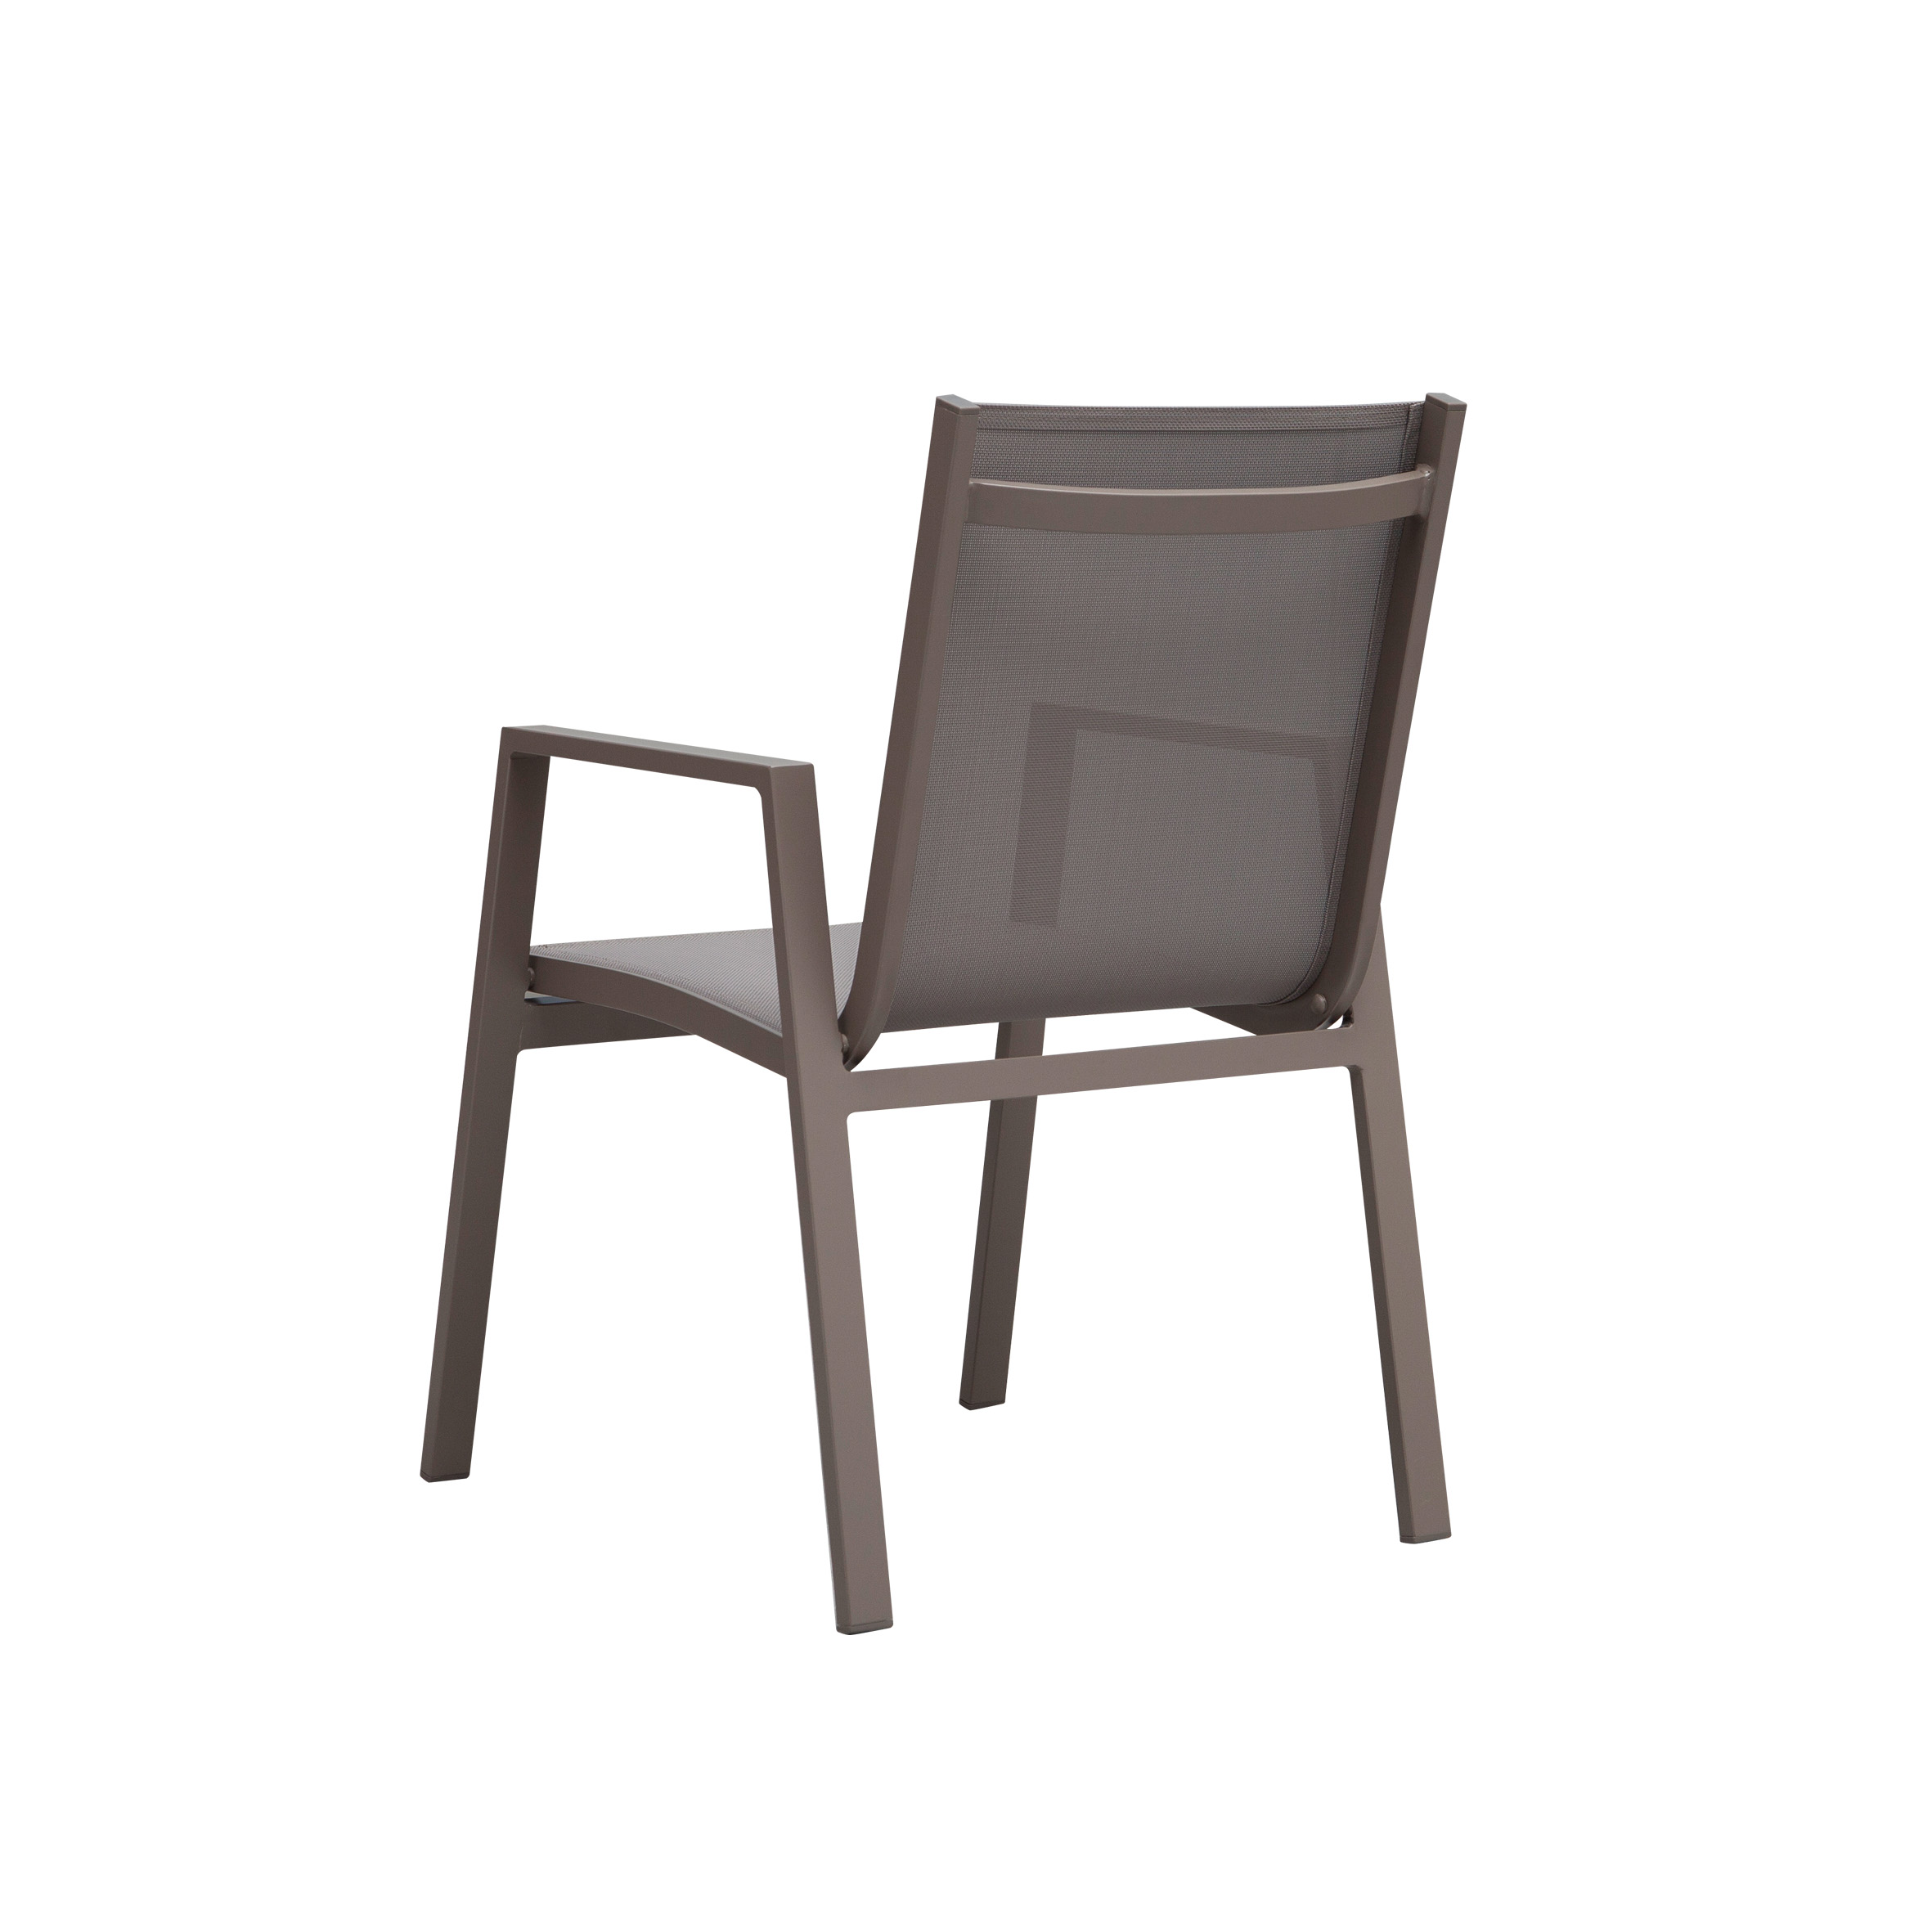 Білосніжний текстильний обідній стілець S7